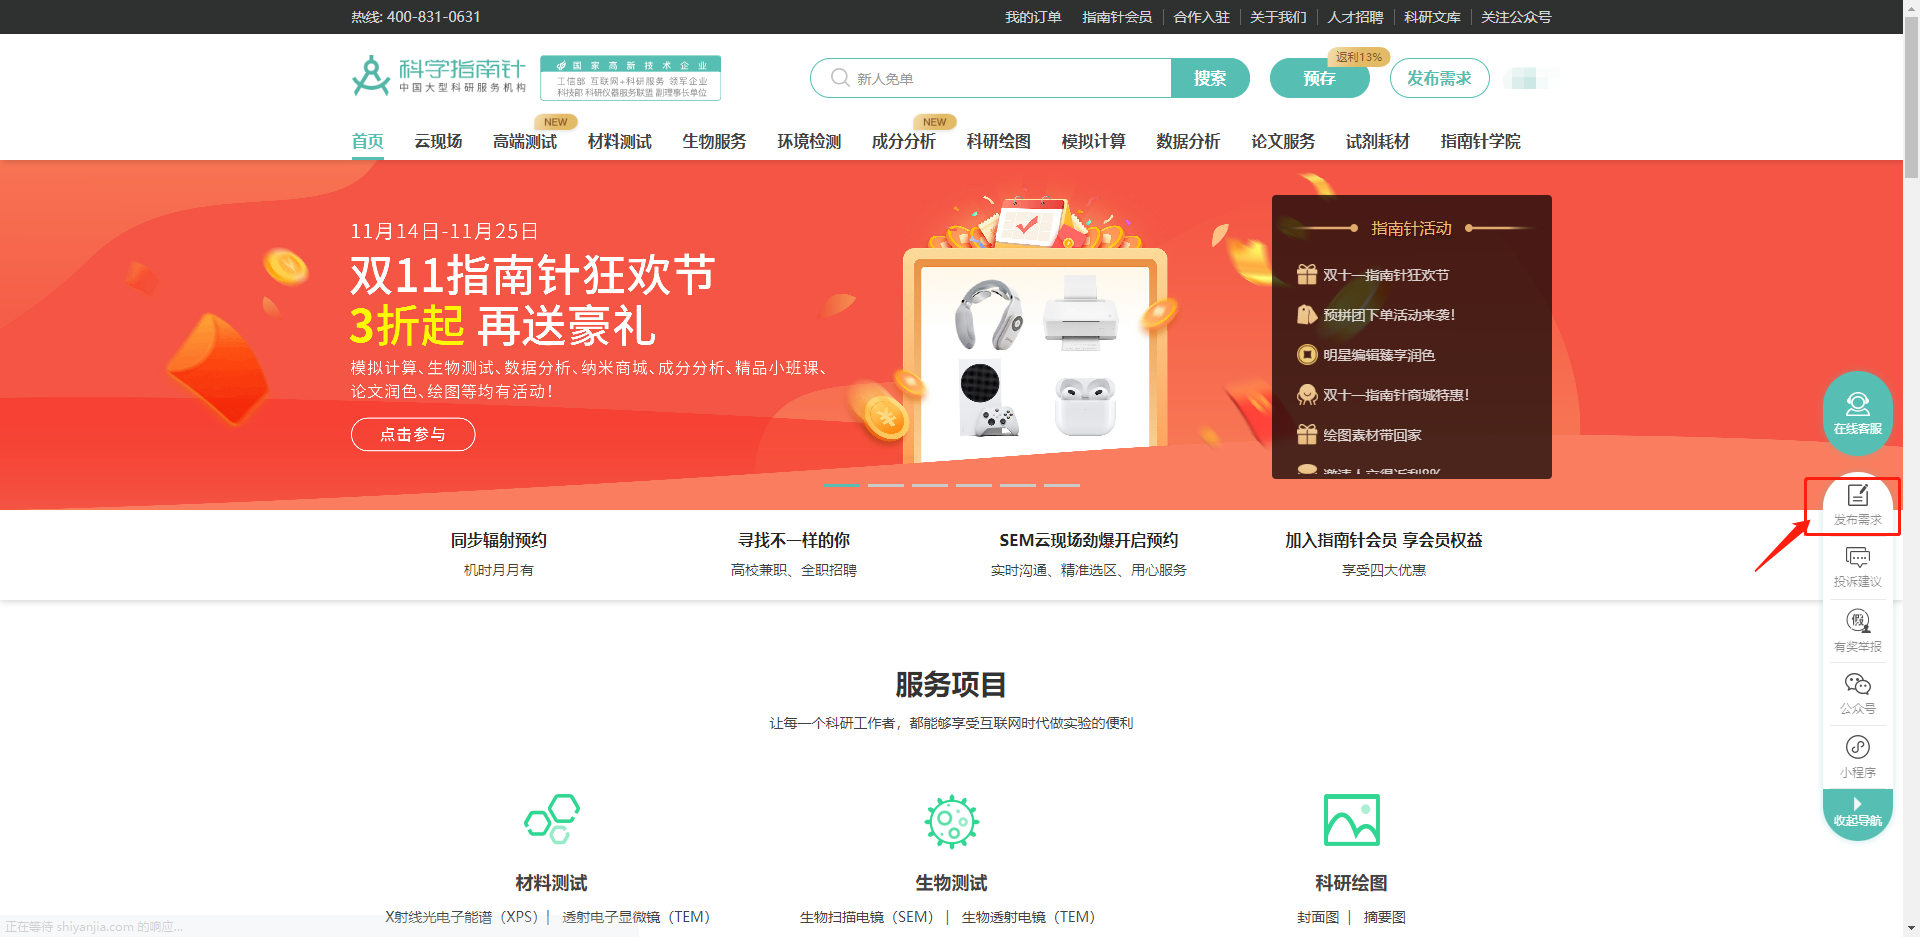 进入www.shiyanjia.com，点击首页右方导航条中的发布需求；